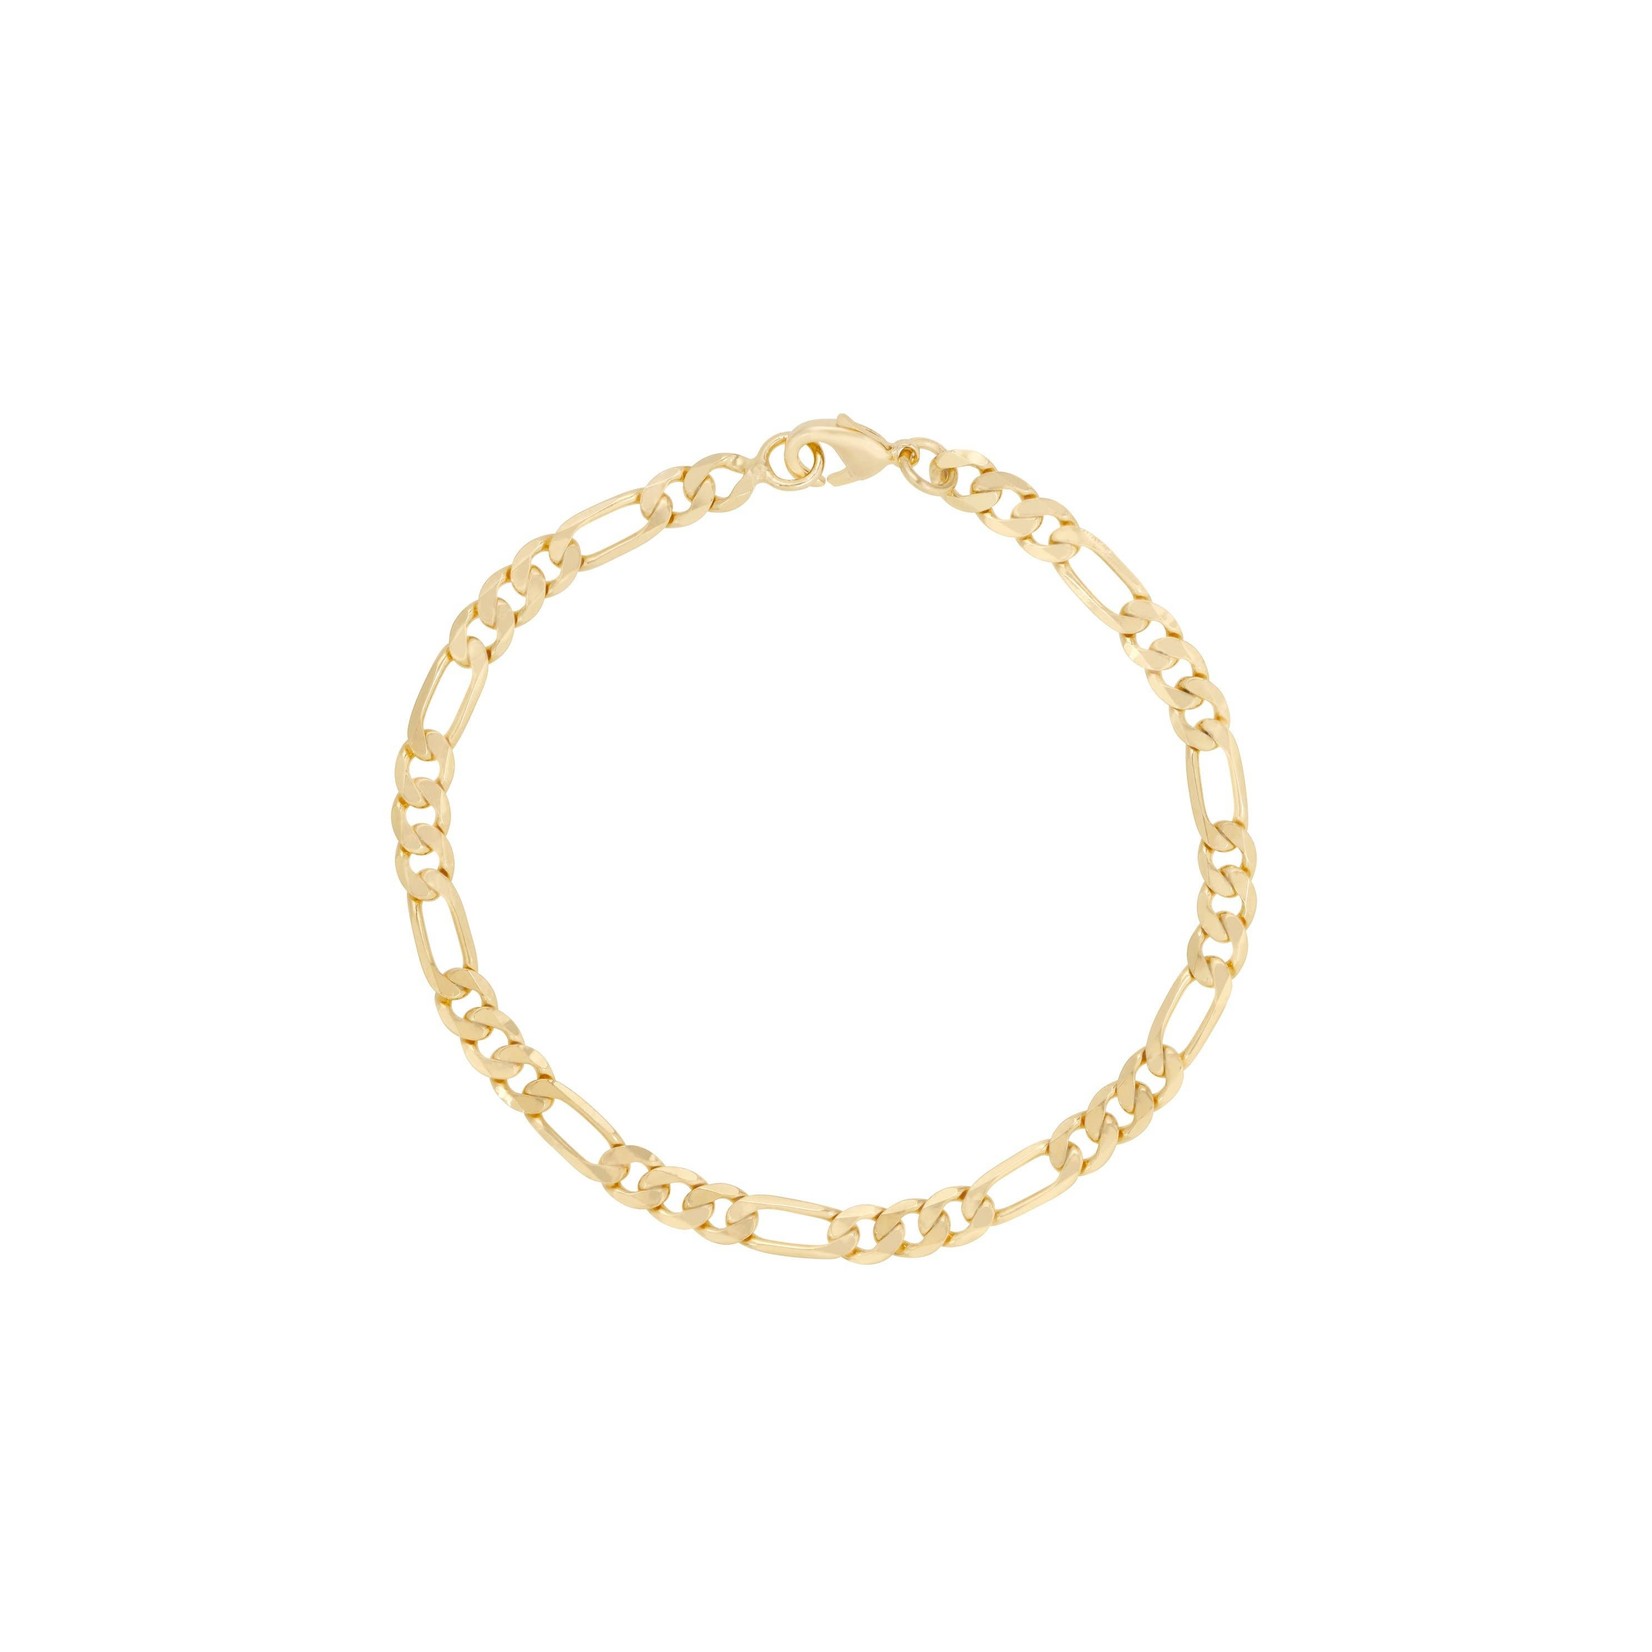 Mod Bracelet 18k gold filled